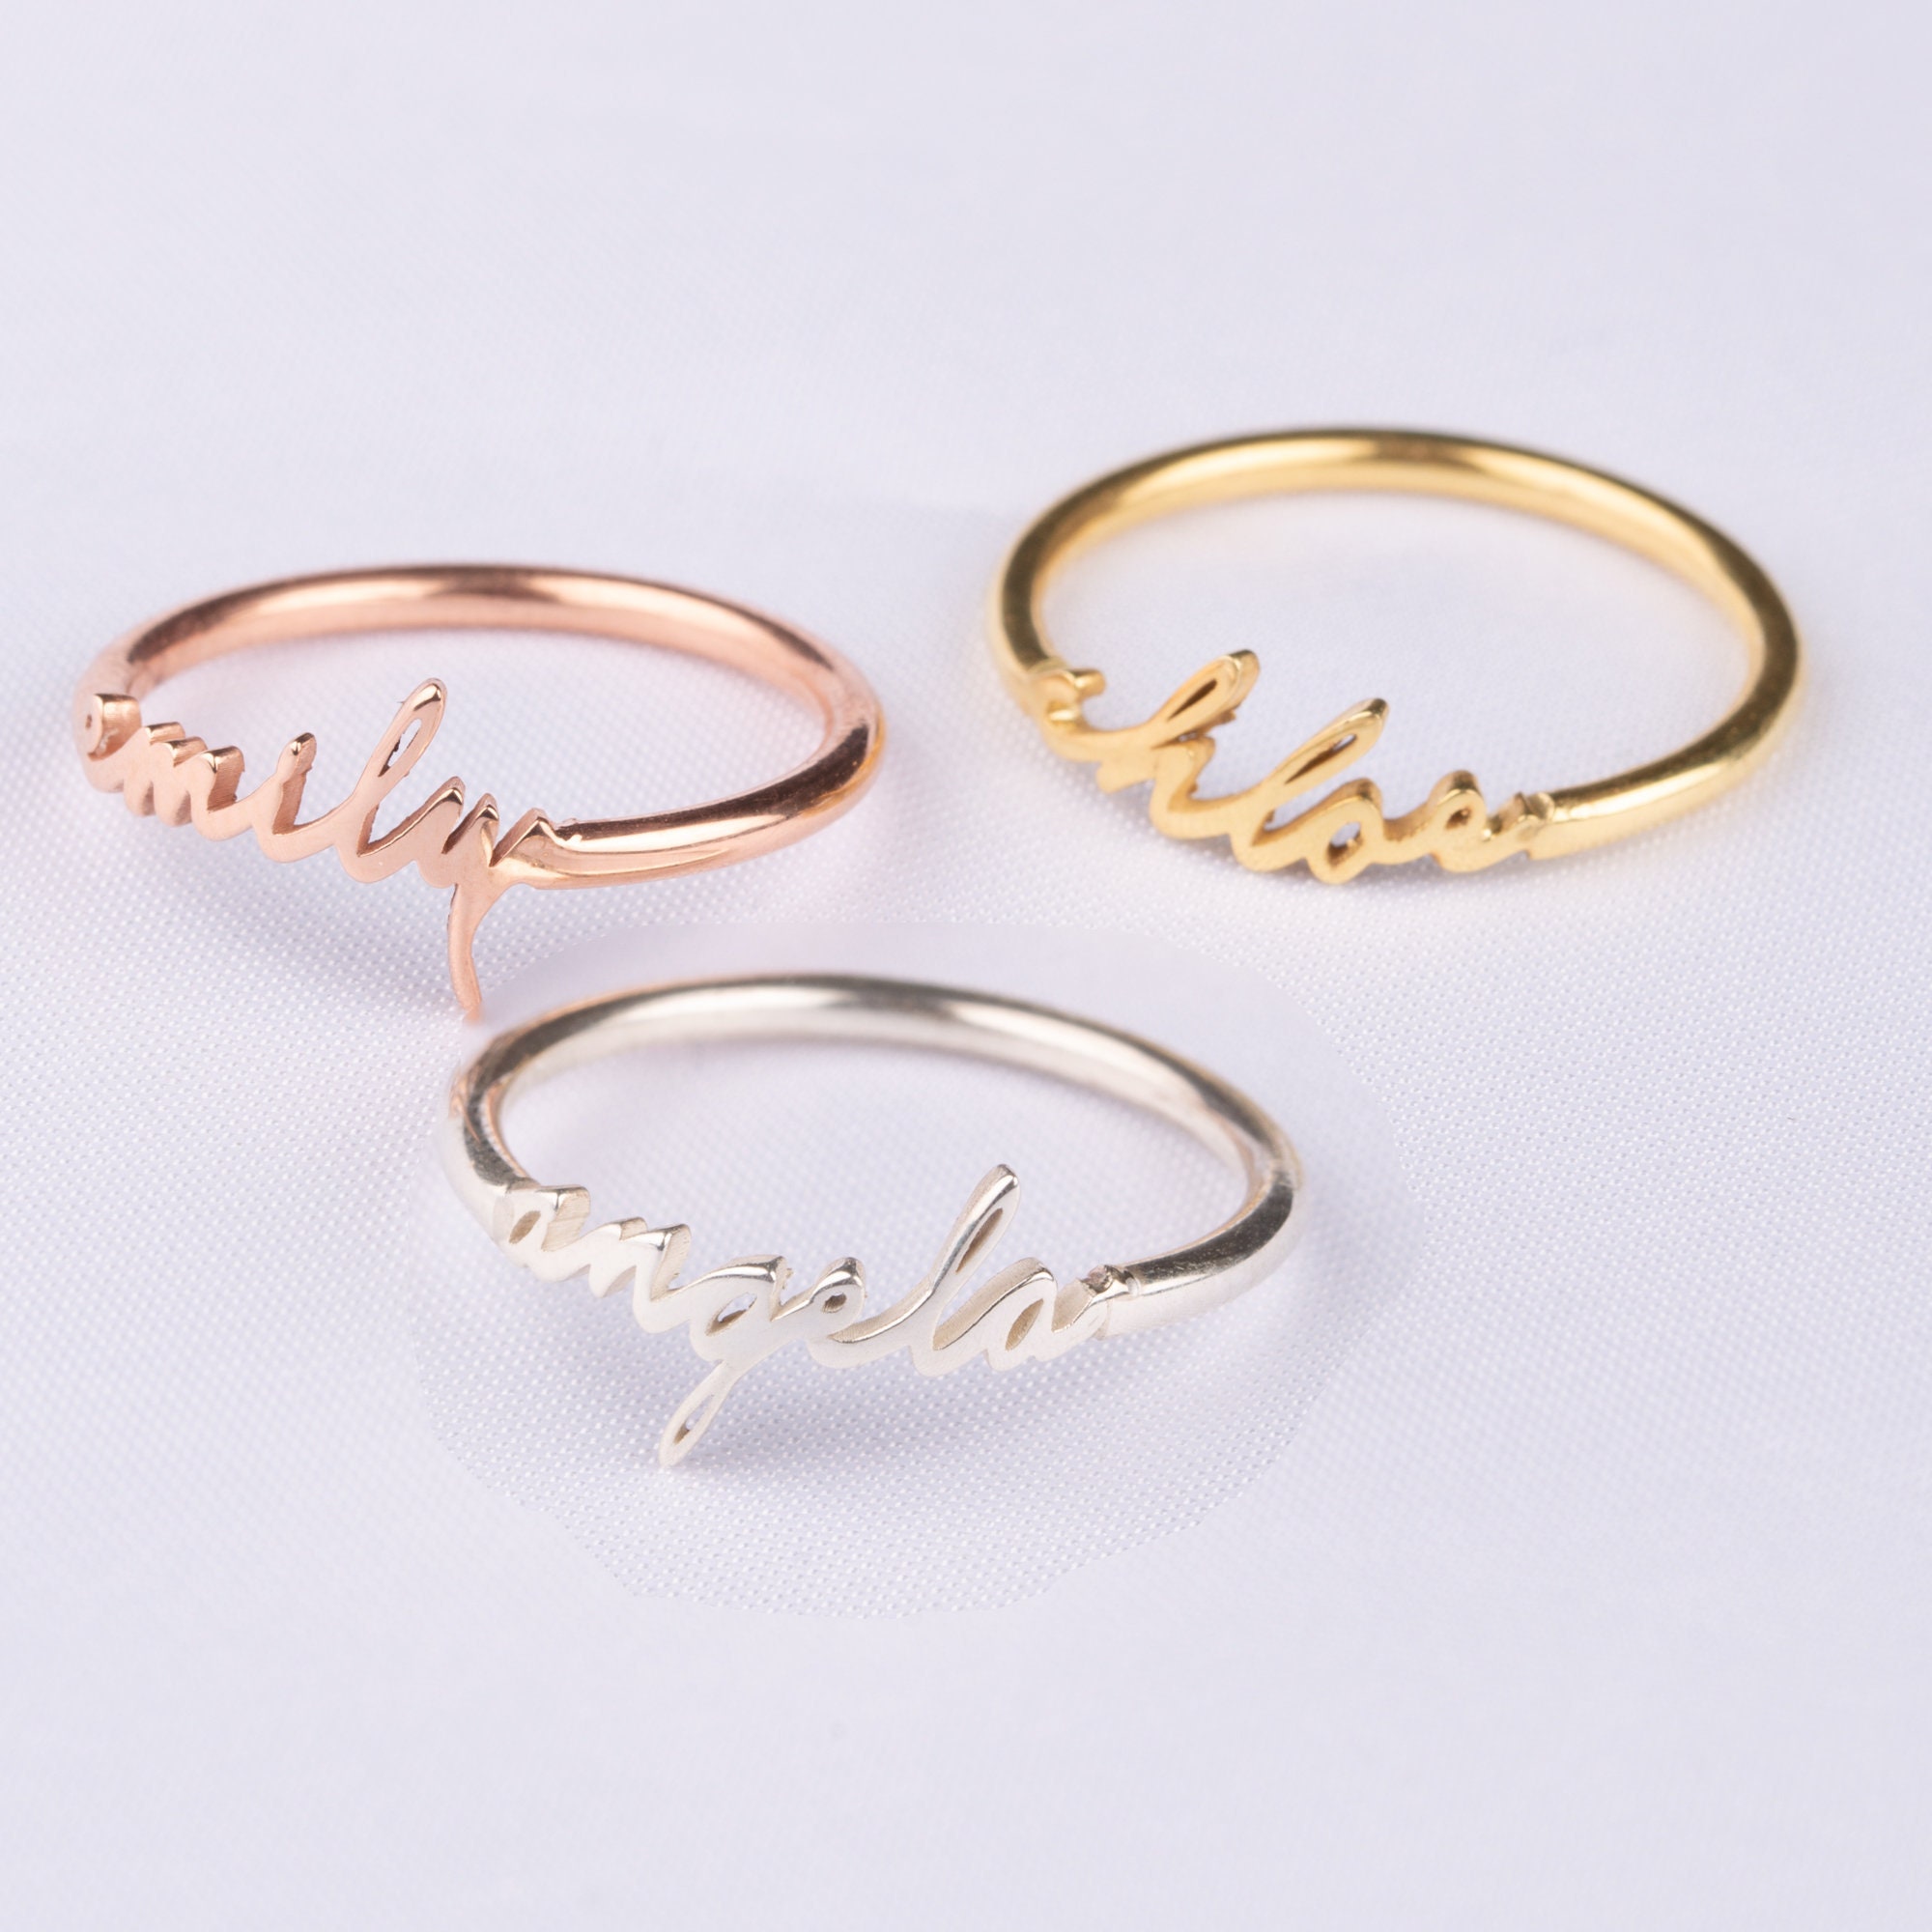 Aries Ring – Beryl Oduor Designs